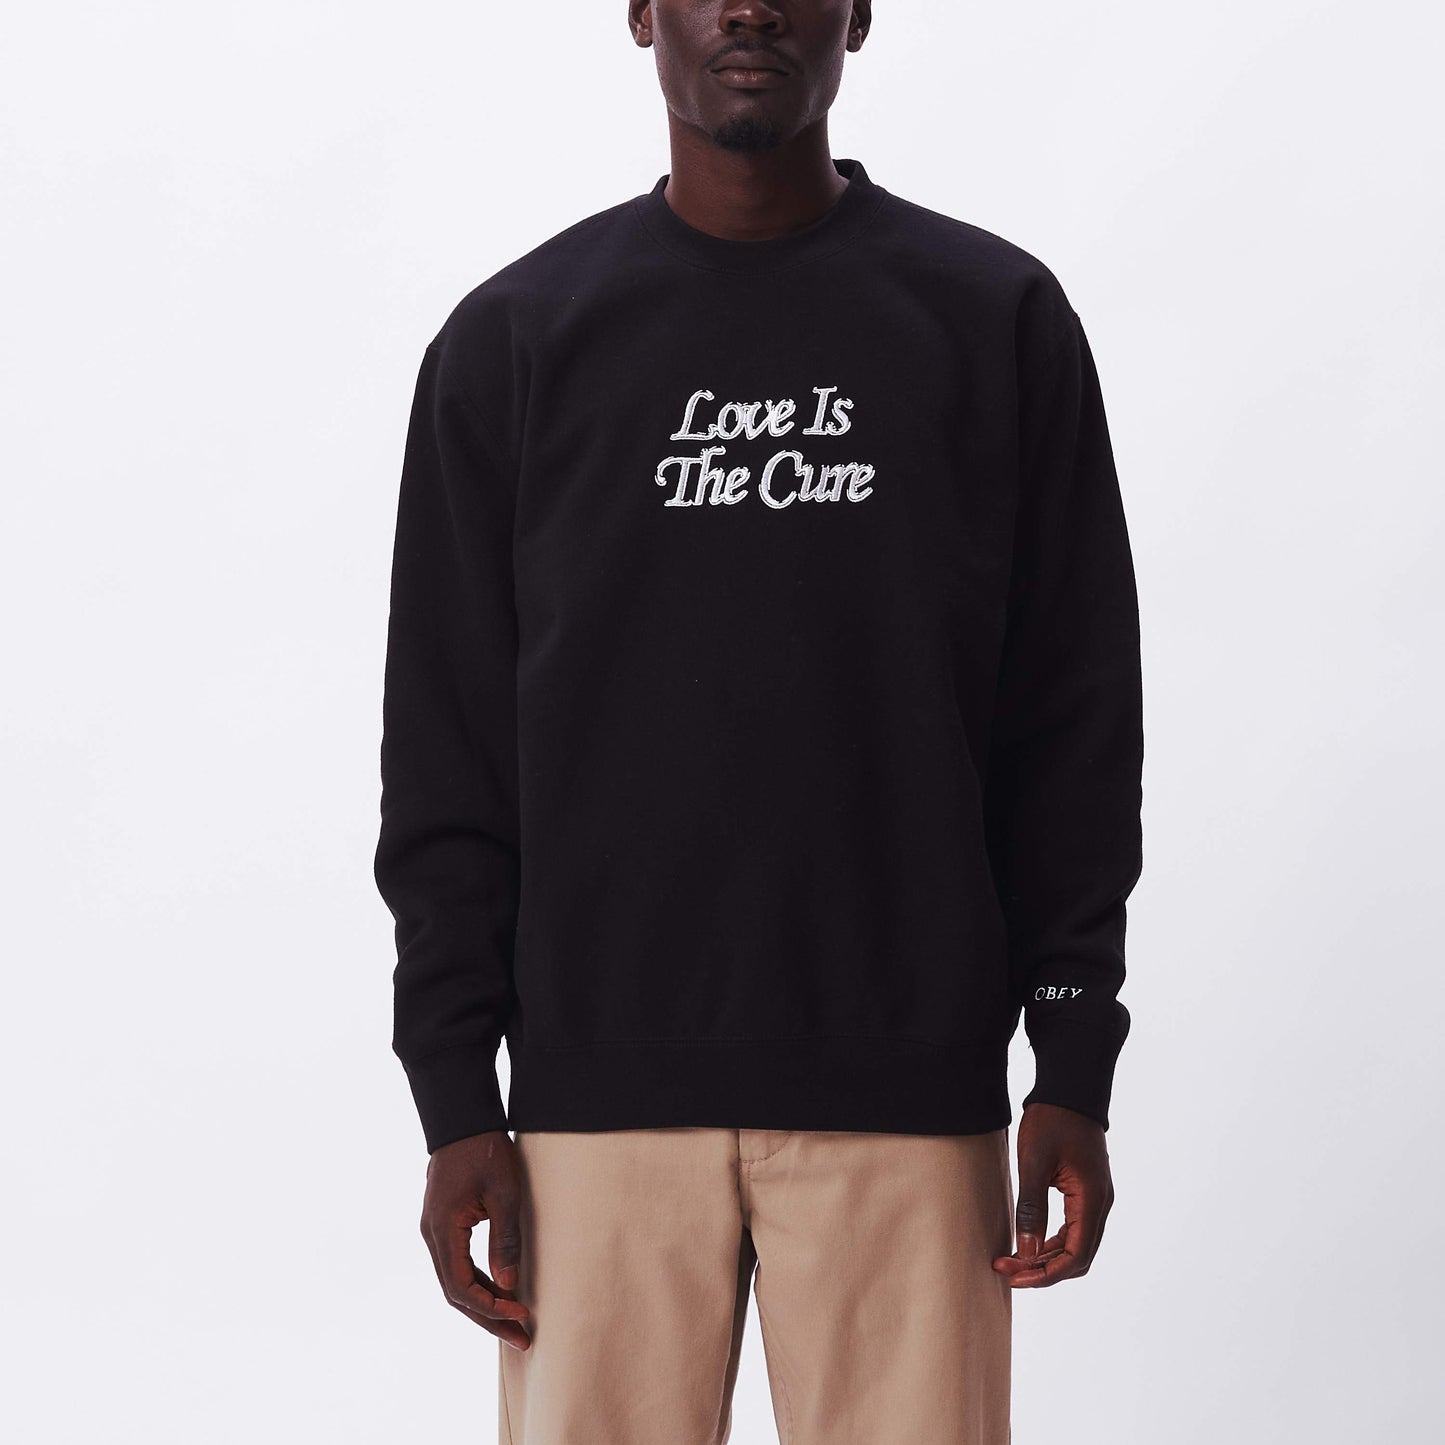 OBEY Love Is The Cure Sweatshirt